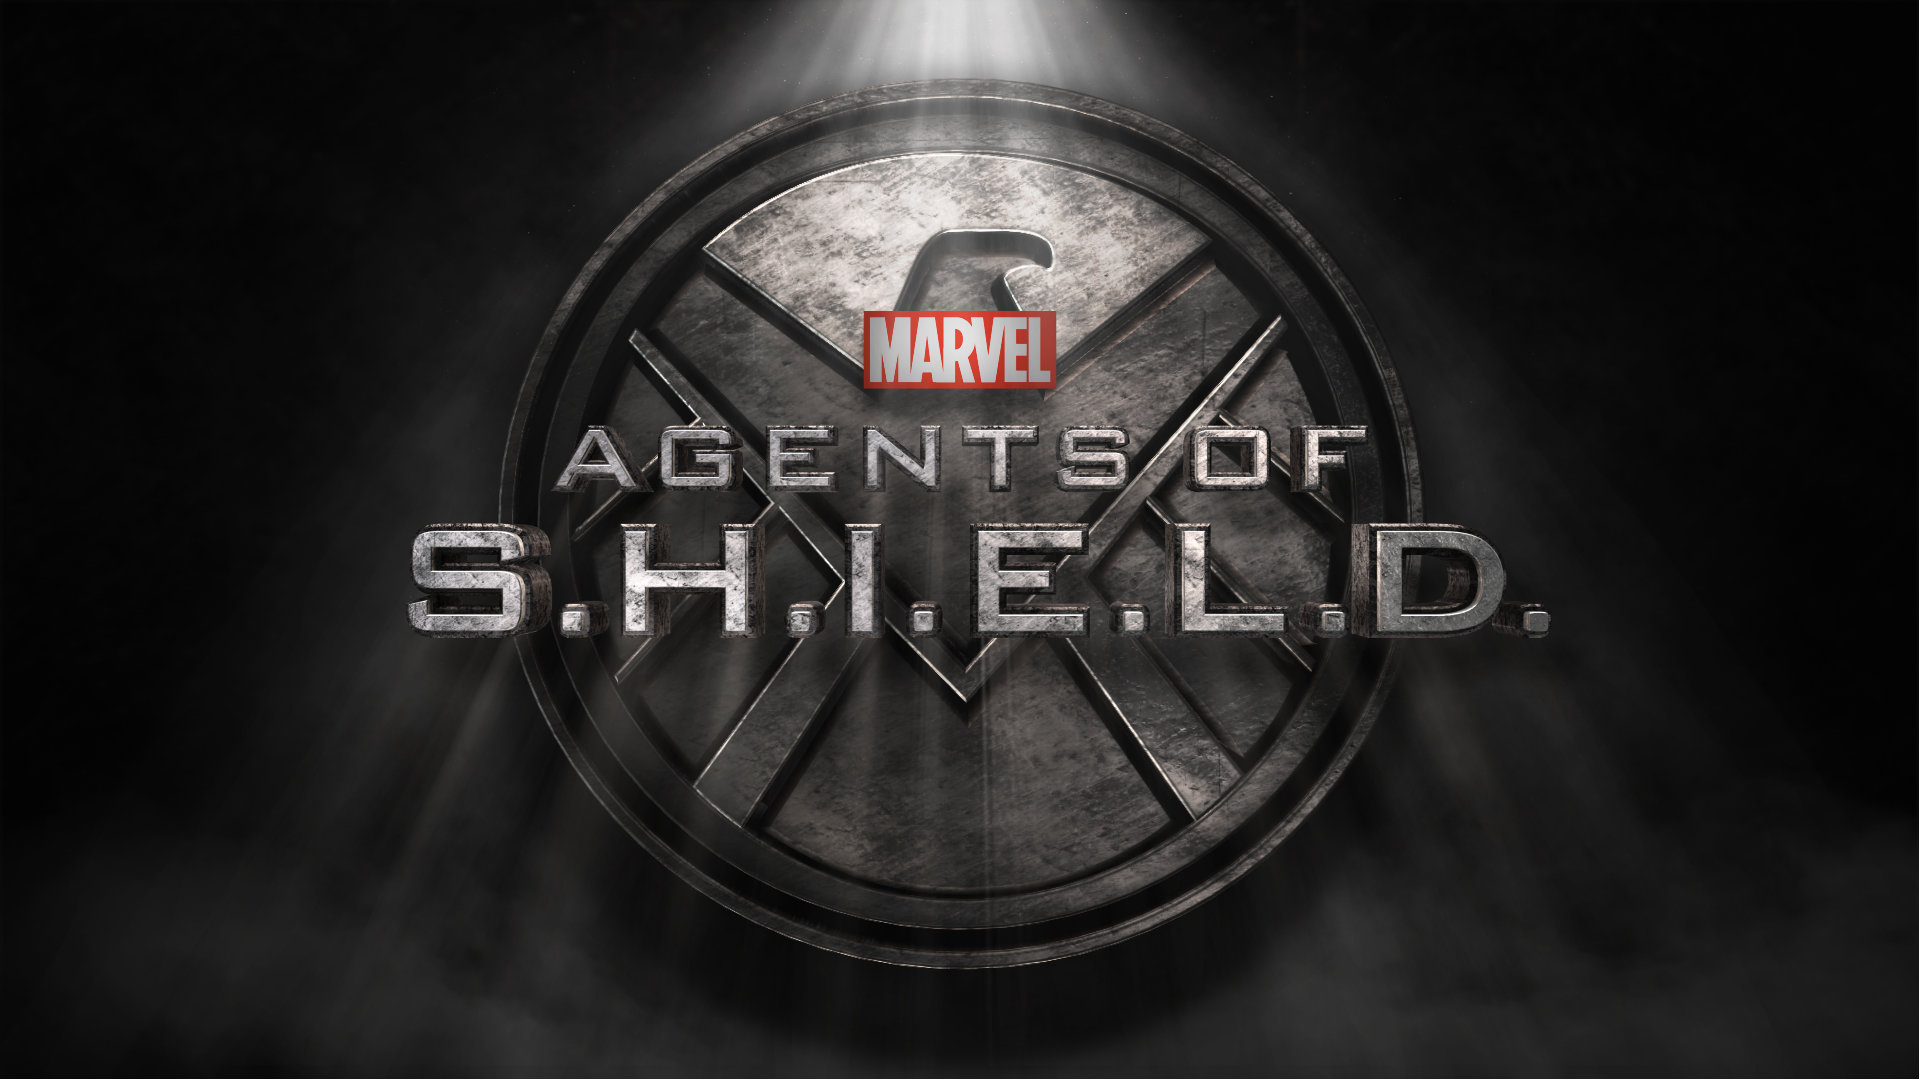 S.H.I.E.L.D.: The series premiered on ABC in the United States on September 24, 2013. 1920x1080 Full HD Wallpaper.